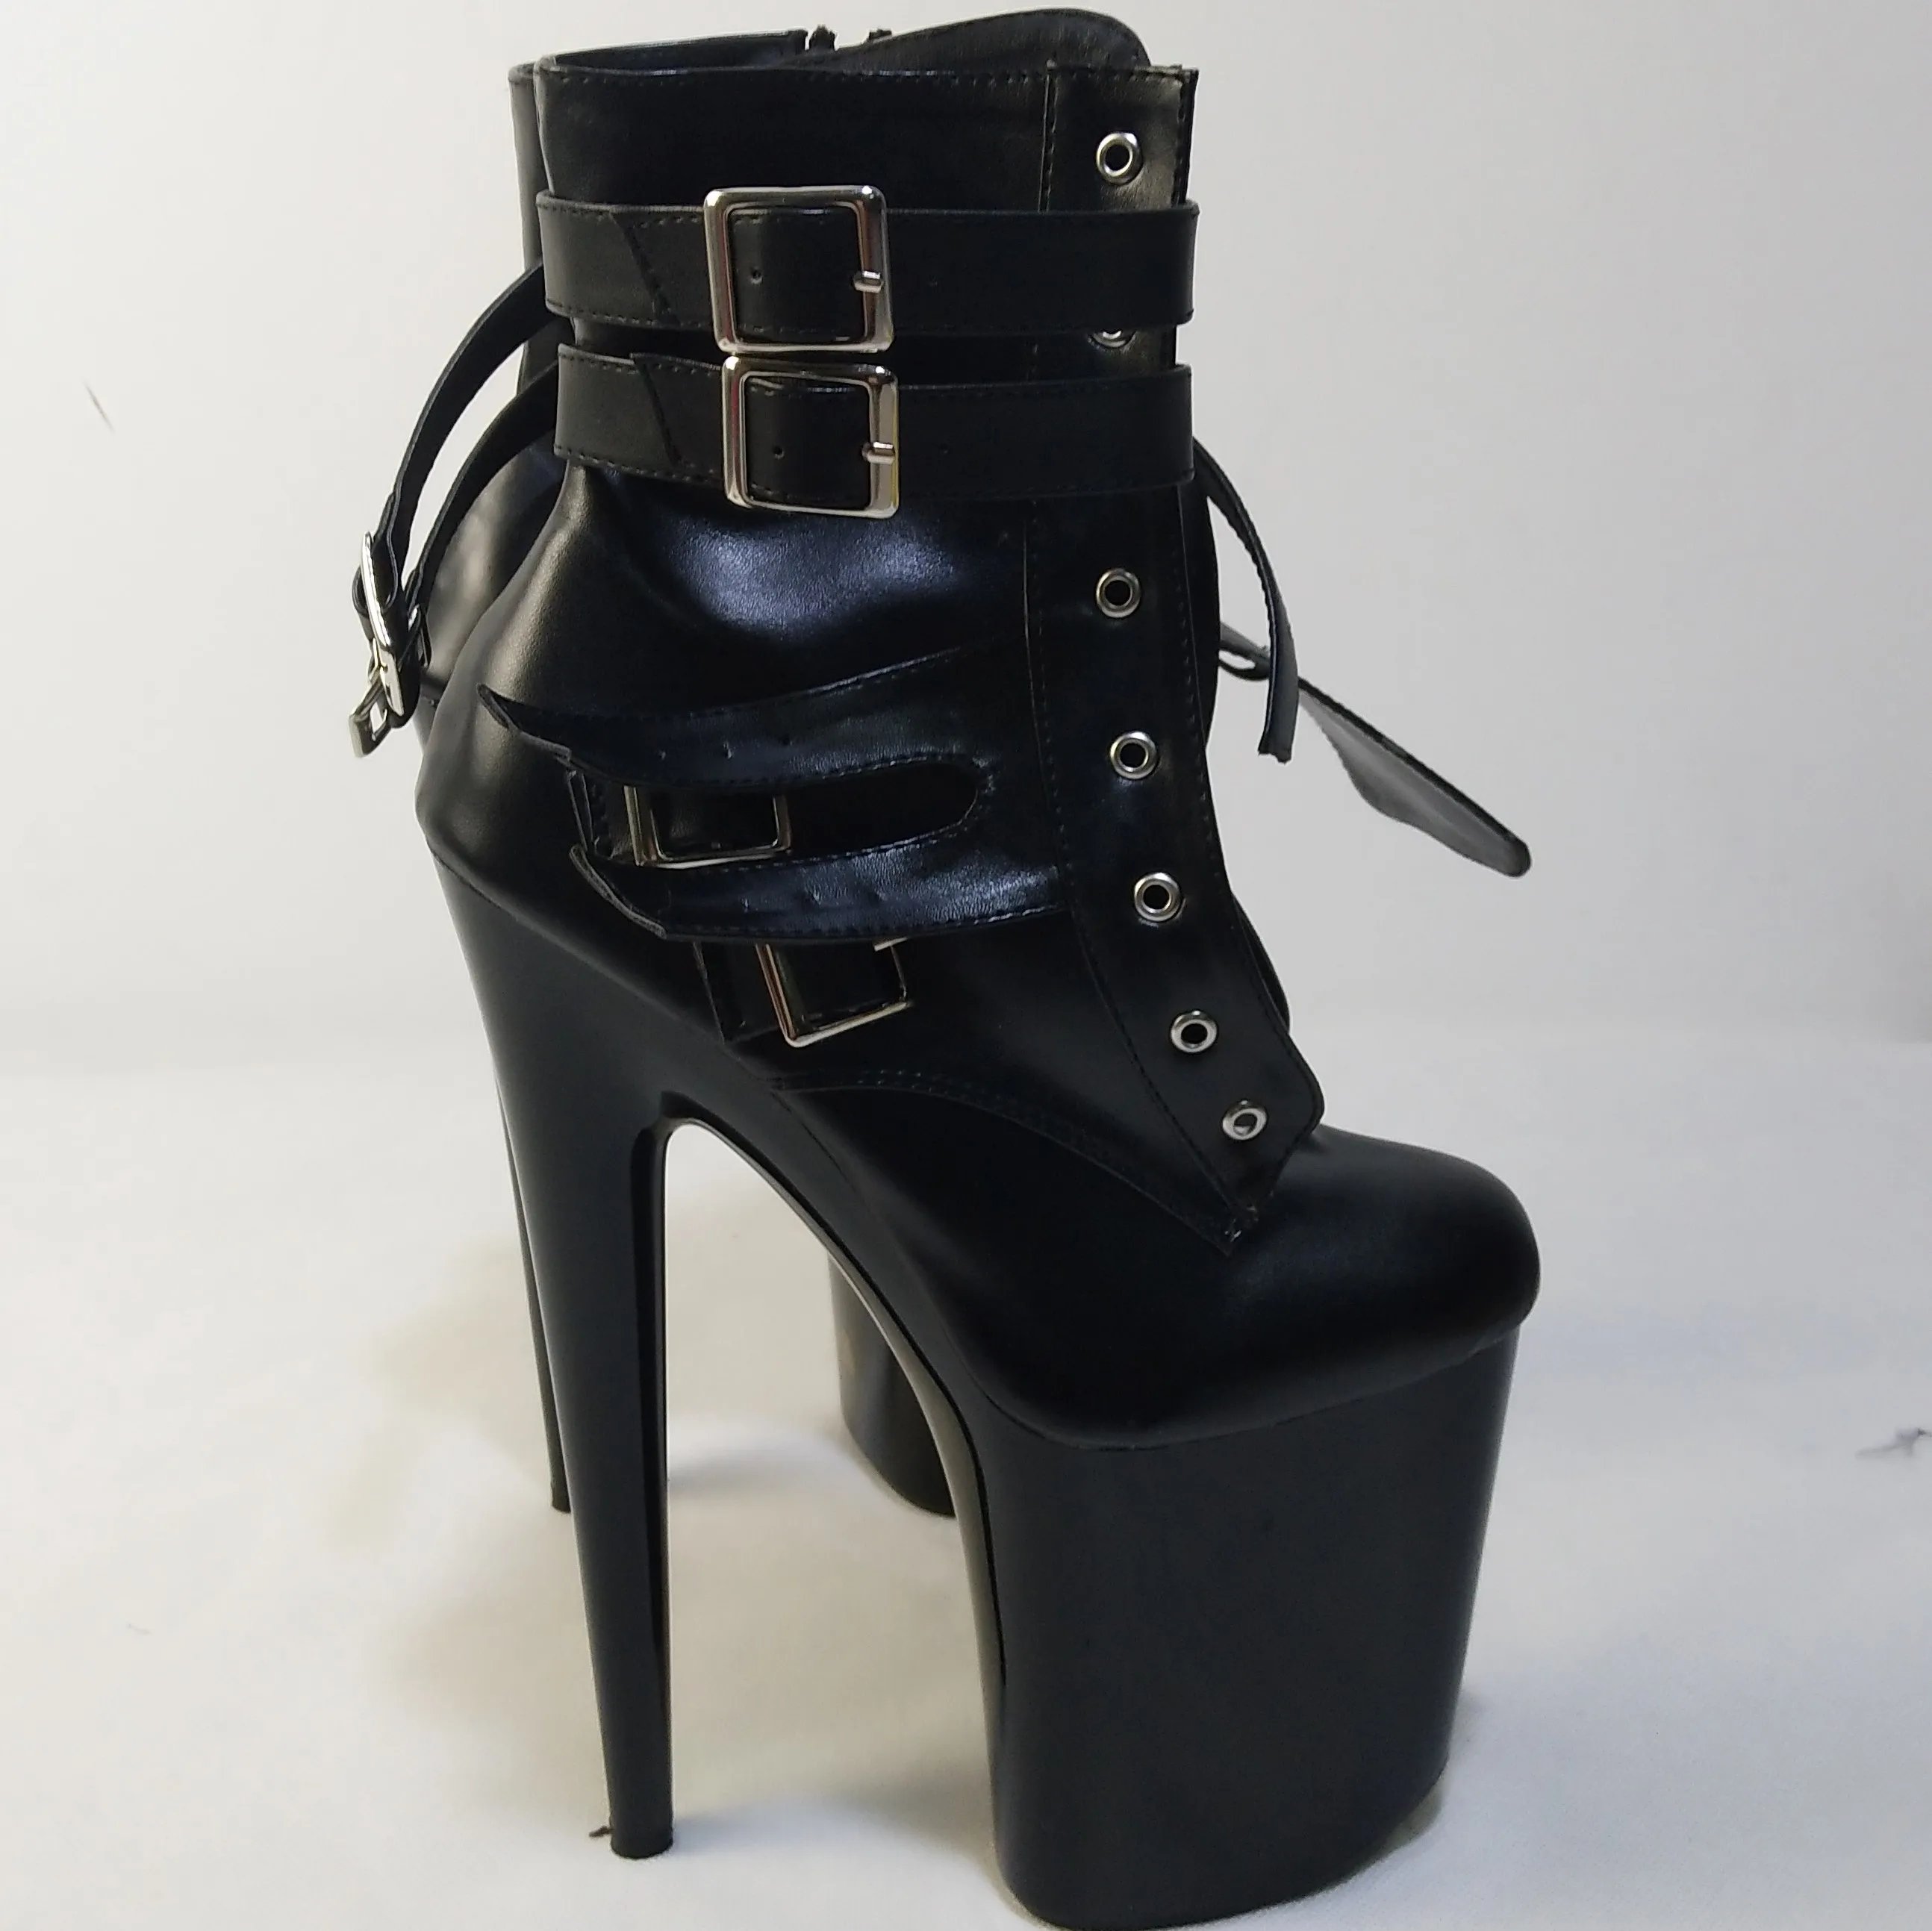 Женские Модные полусапожки в байкерском стиле; ботильоны с пряжкой; классические весенние ботинки на высоком каблуке 20 см; цвет черный, белый - Цвет: Черный